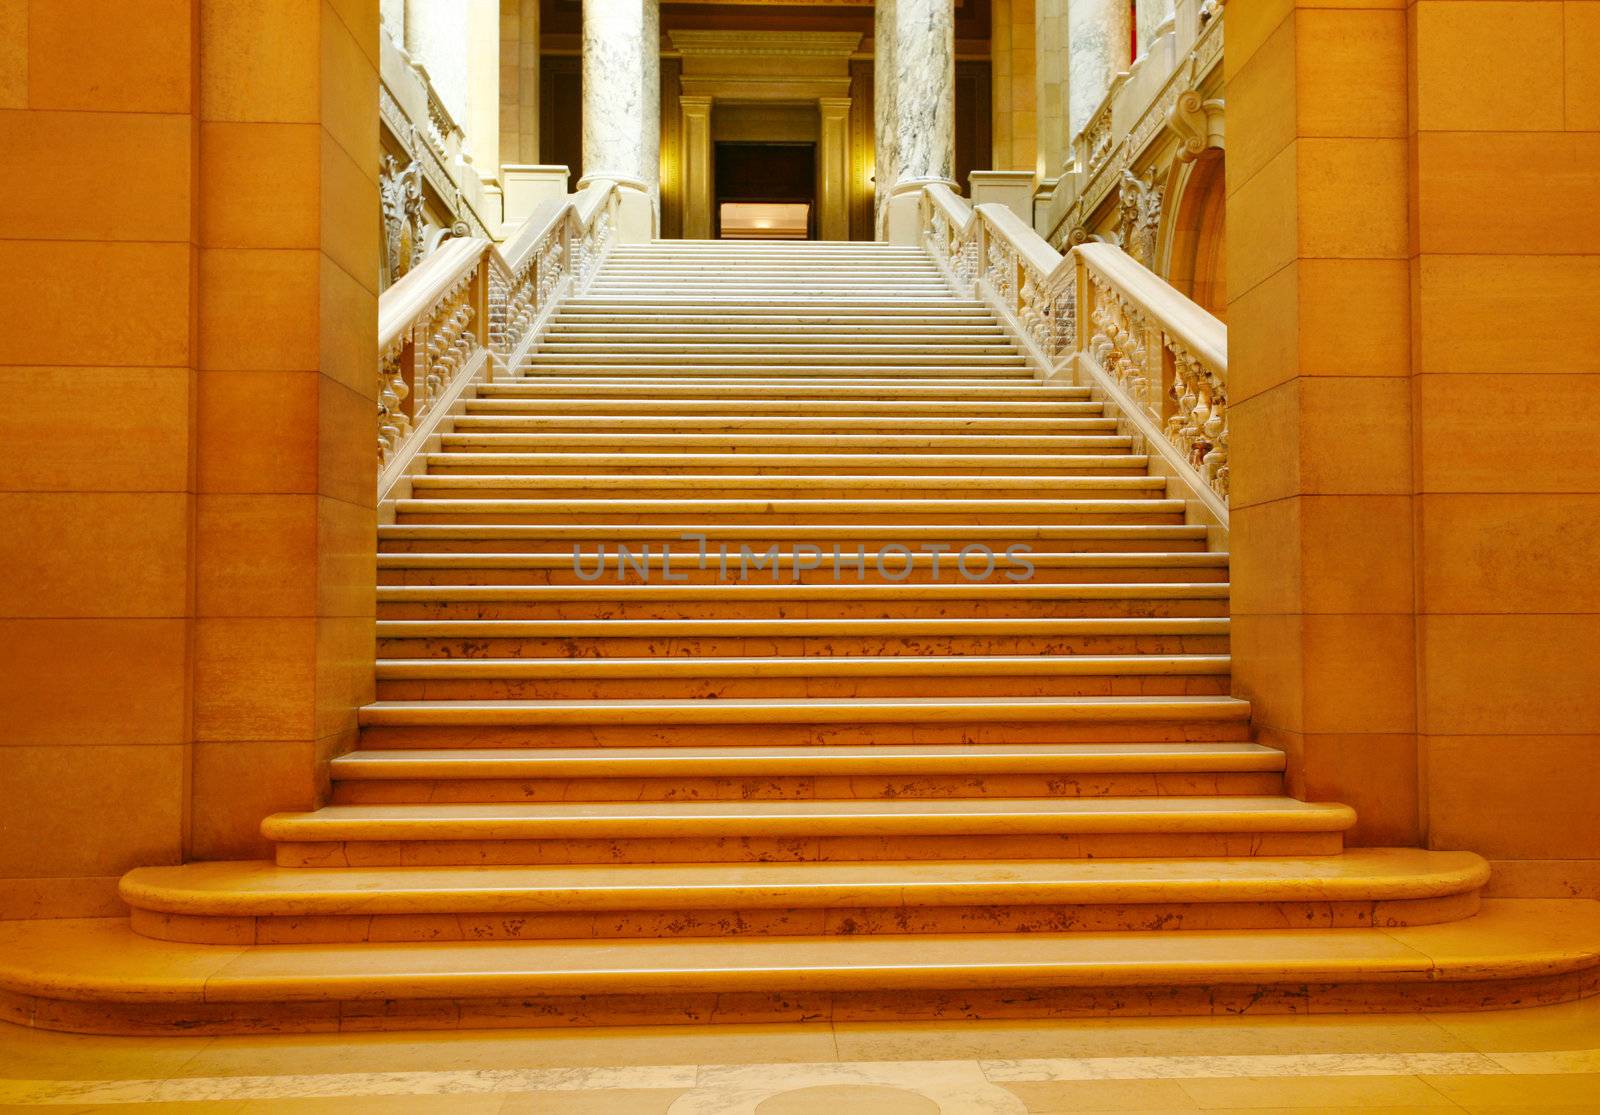 Shadowed marble stairway by jarenwicklund